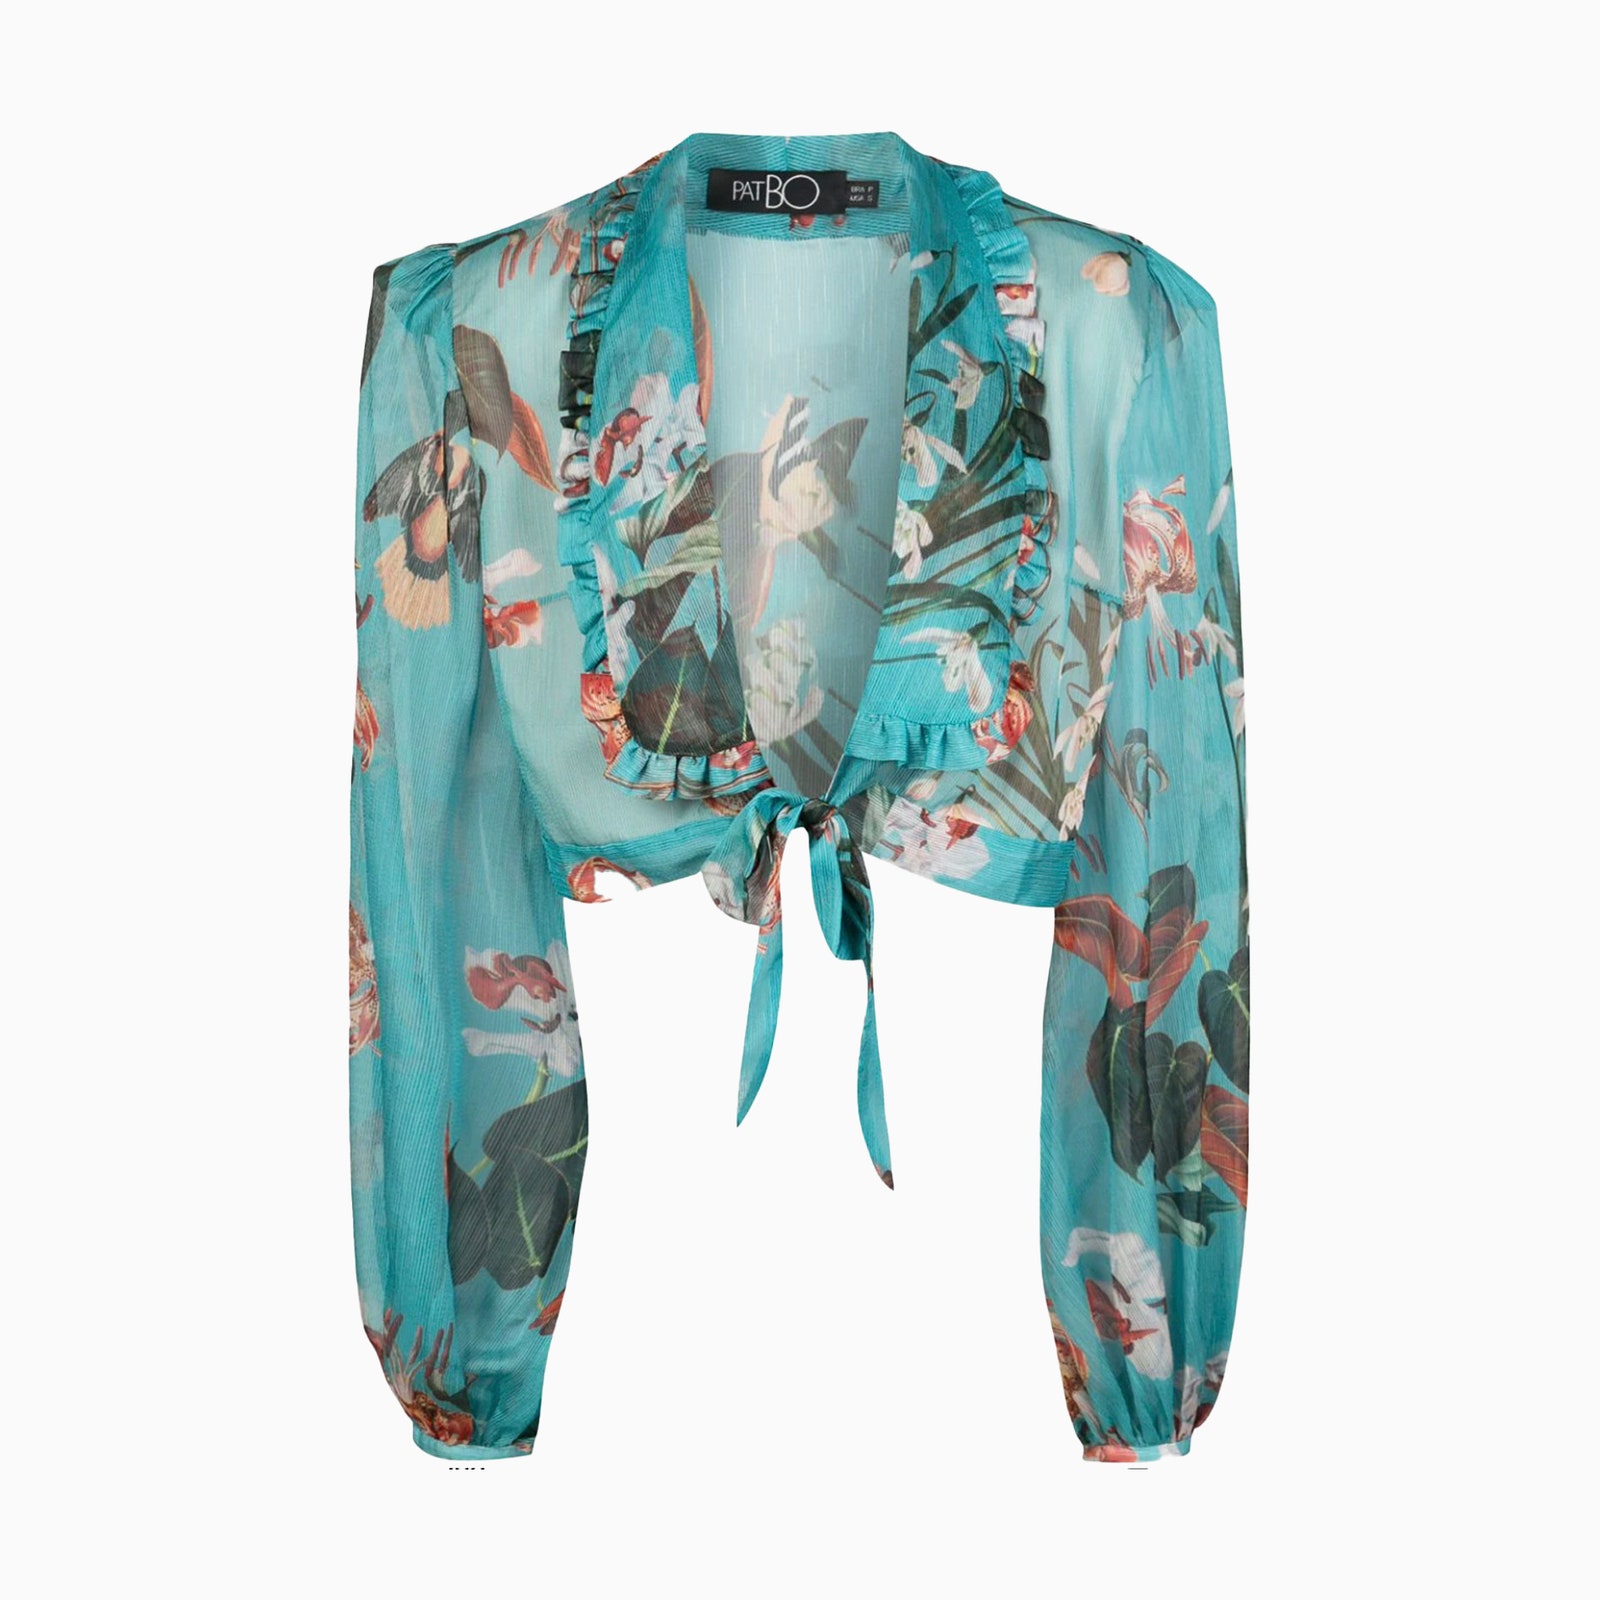 Укороченная блуза PatBO 50381 рубль farfetch.com